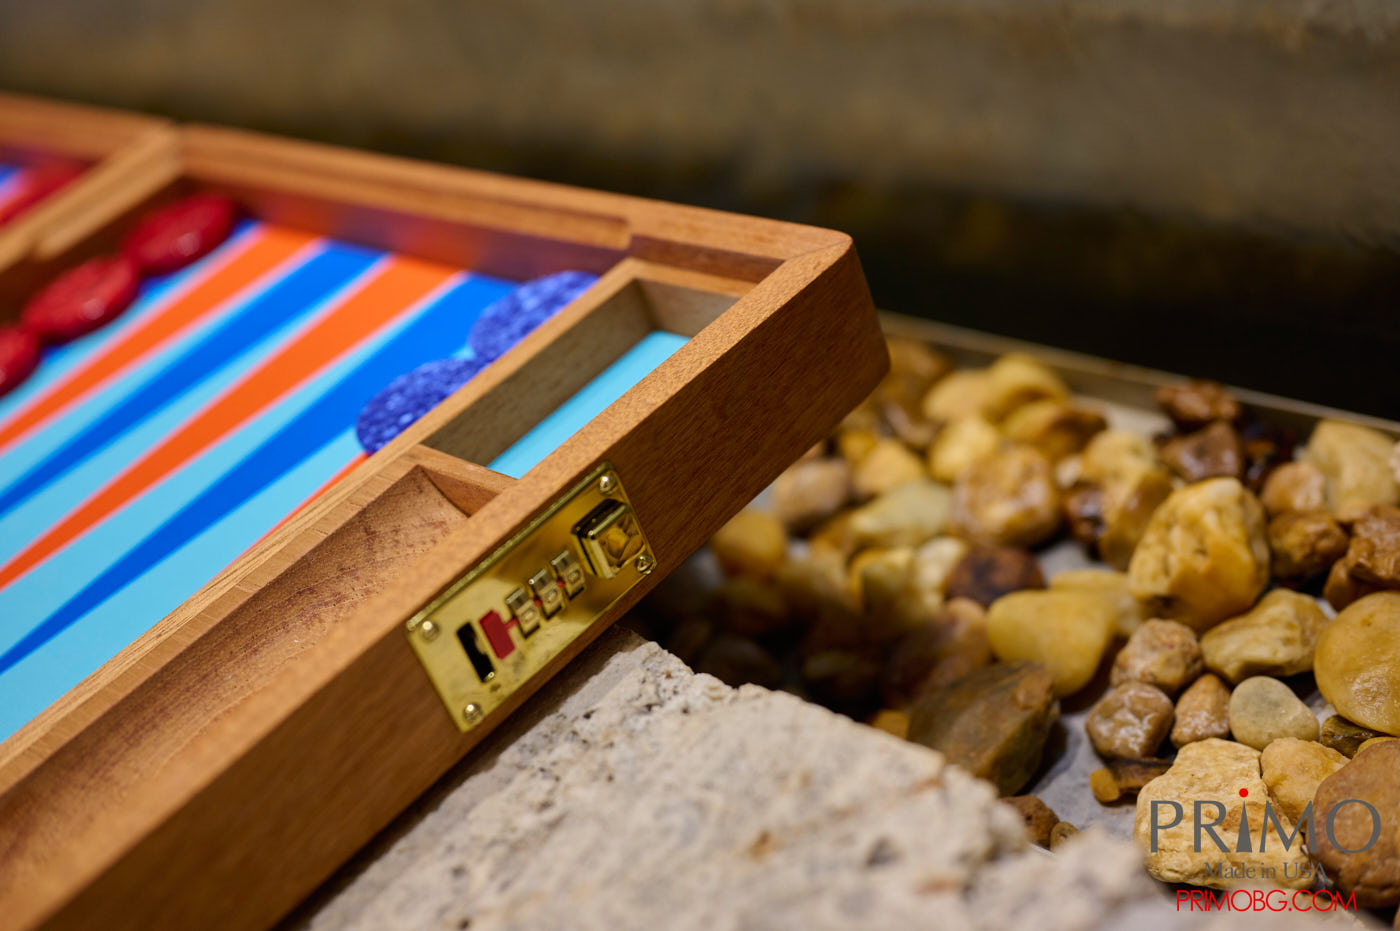 "Malta" Luxury Backgammon Board